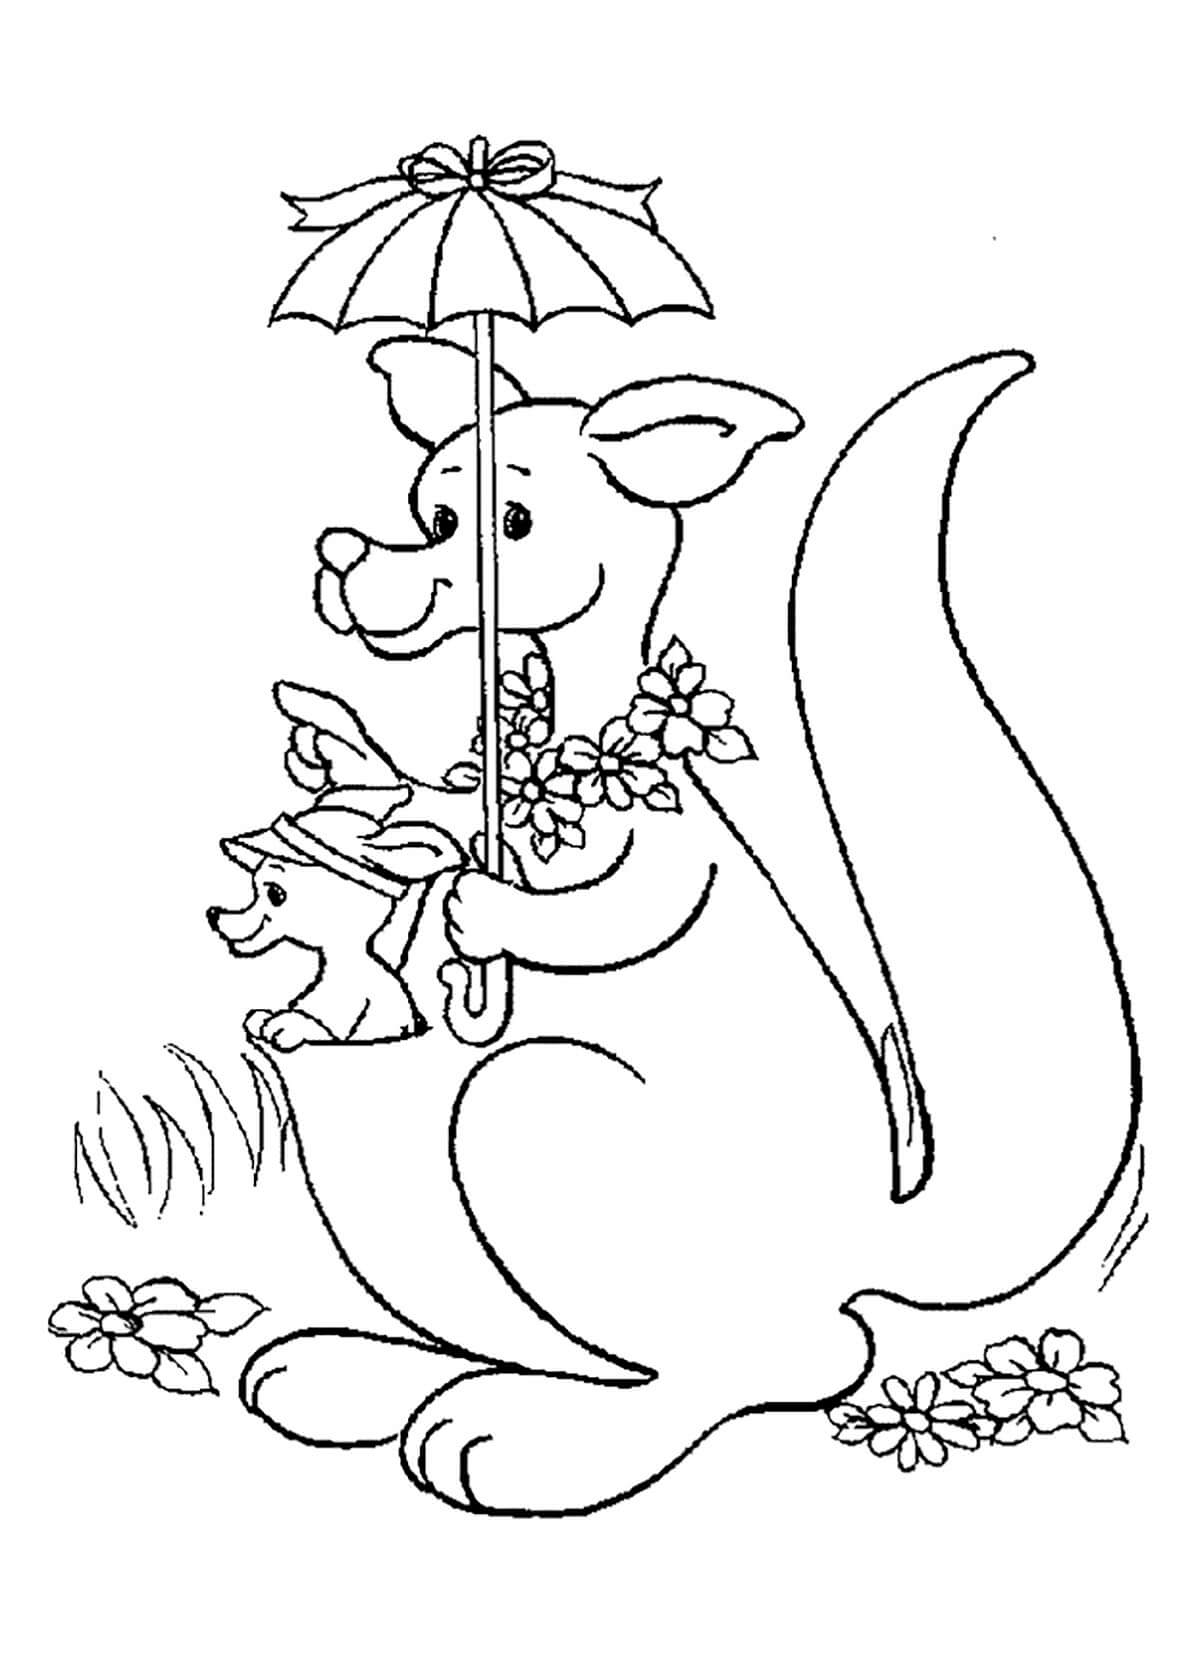 Kangoeroe die paraplu vasthoudt met babykangoeroe